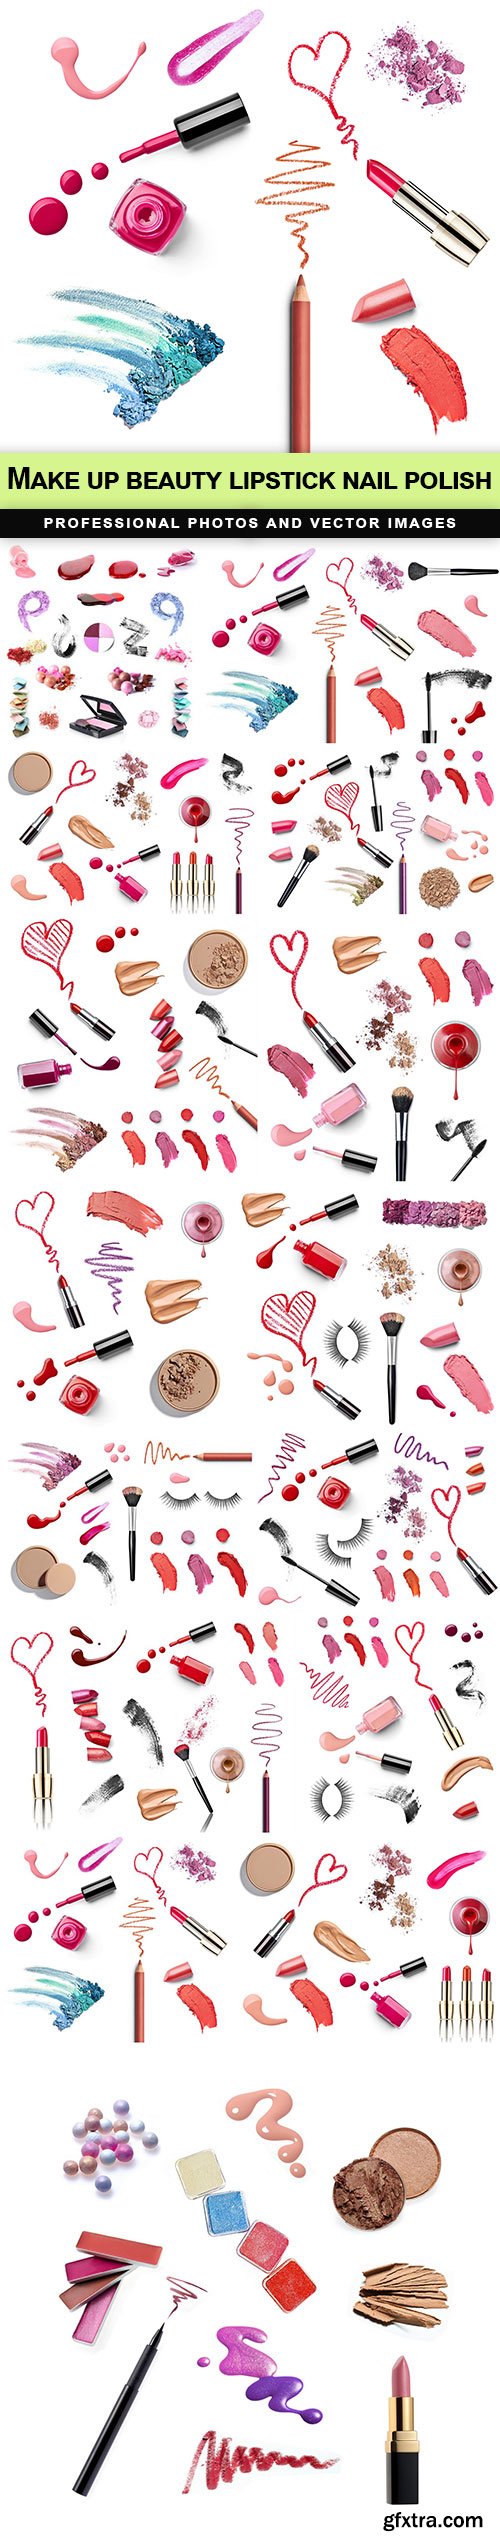 Make up beauty lipstick nail polish - 15 UHQ JPEG